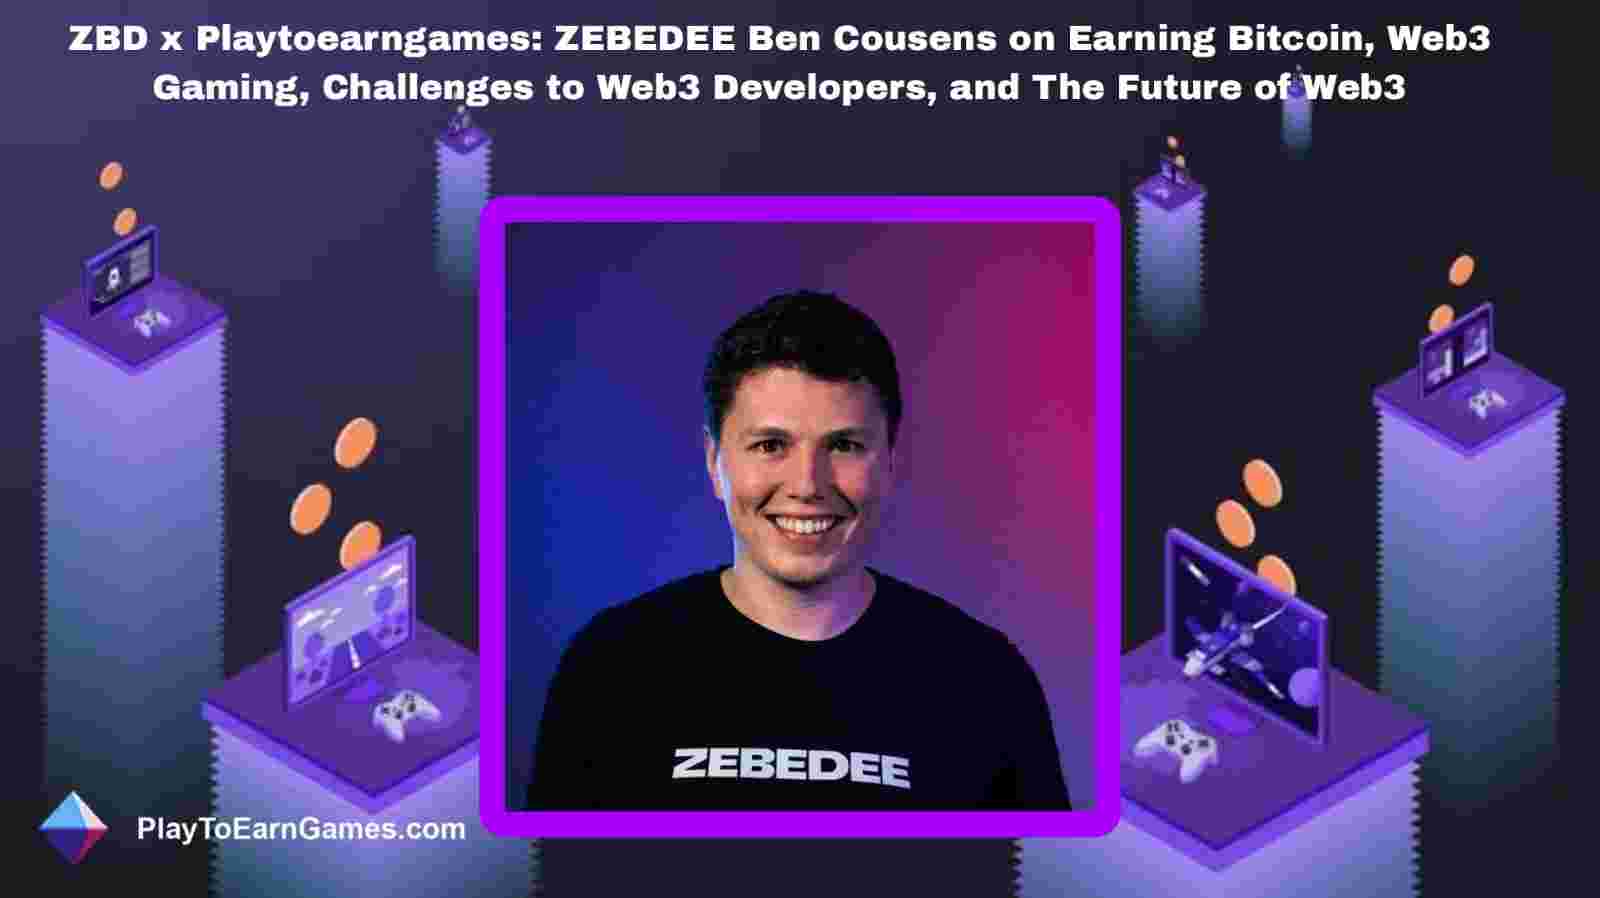 Recompensas, tendencias y entrevista de Bitcoin de ZBD con Ben Cousens